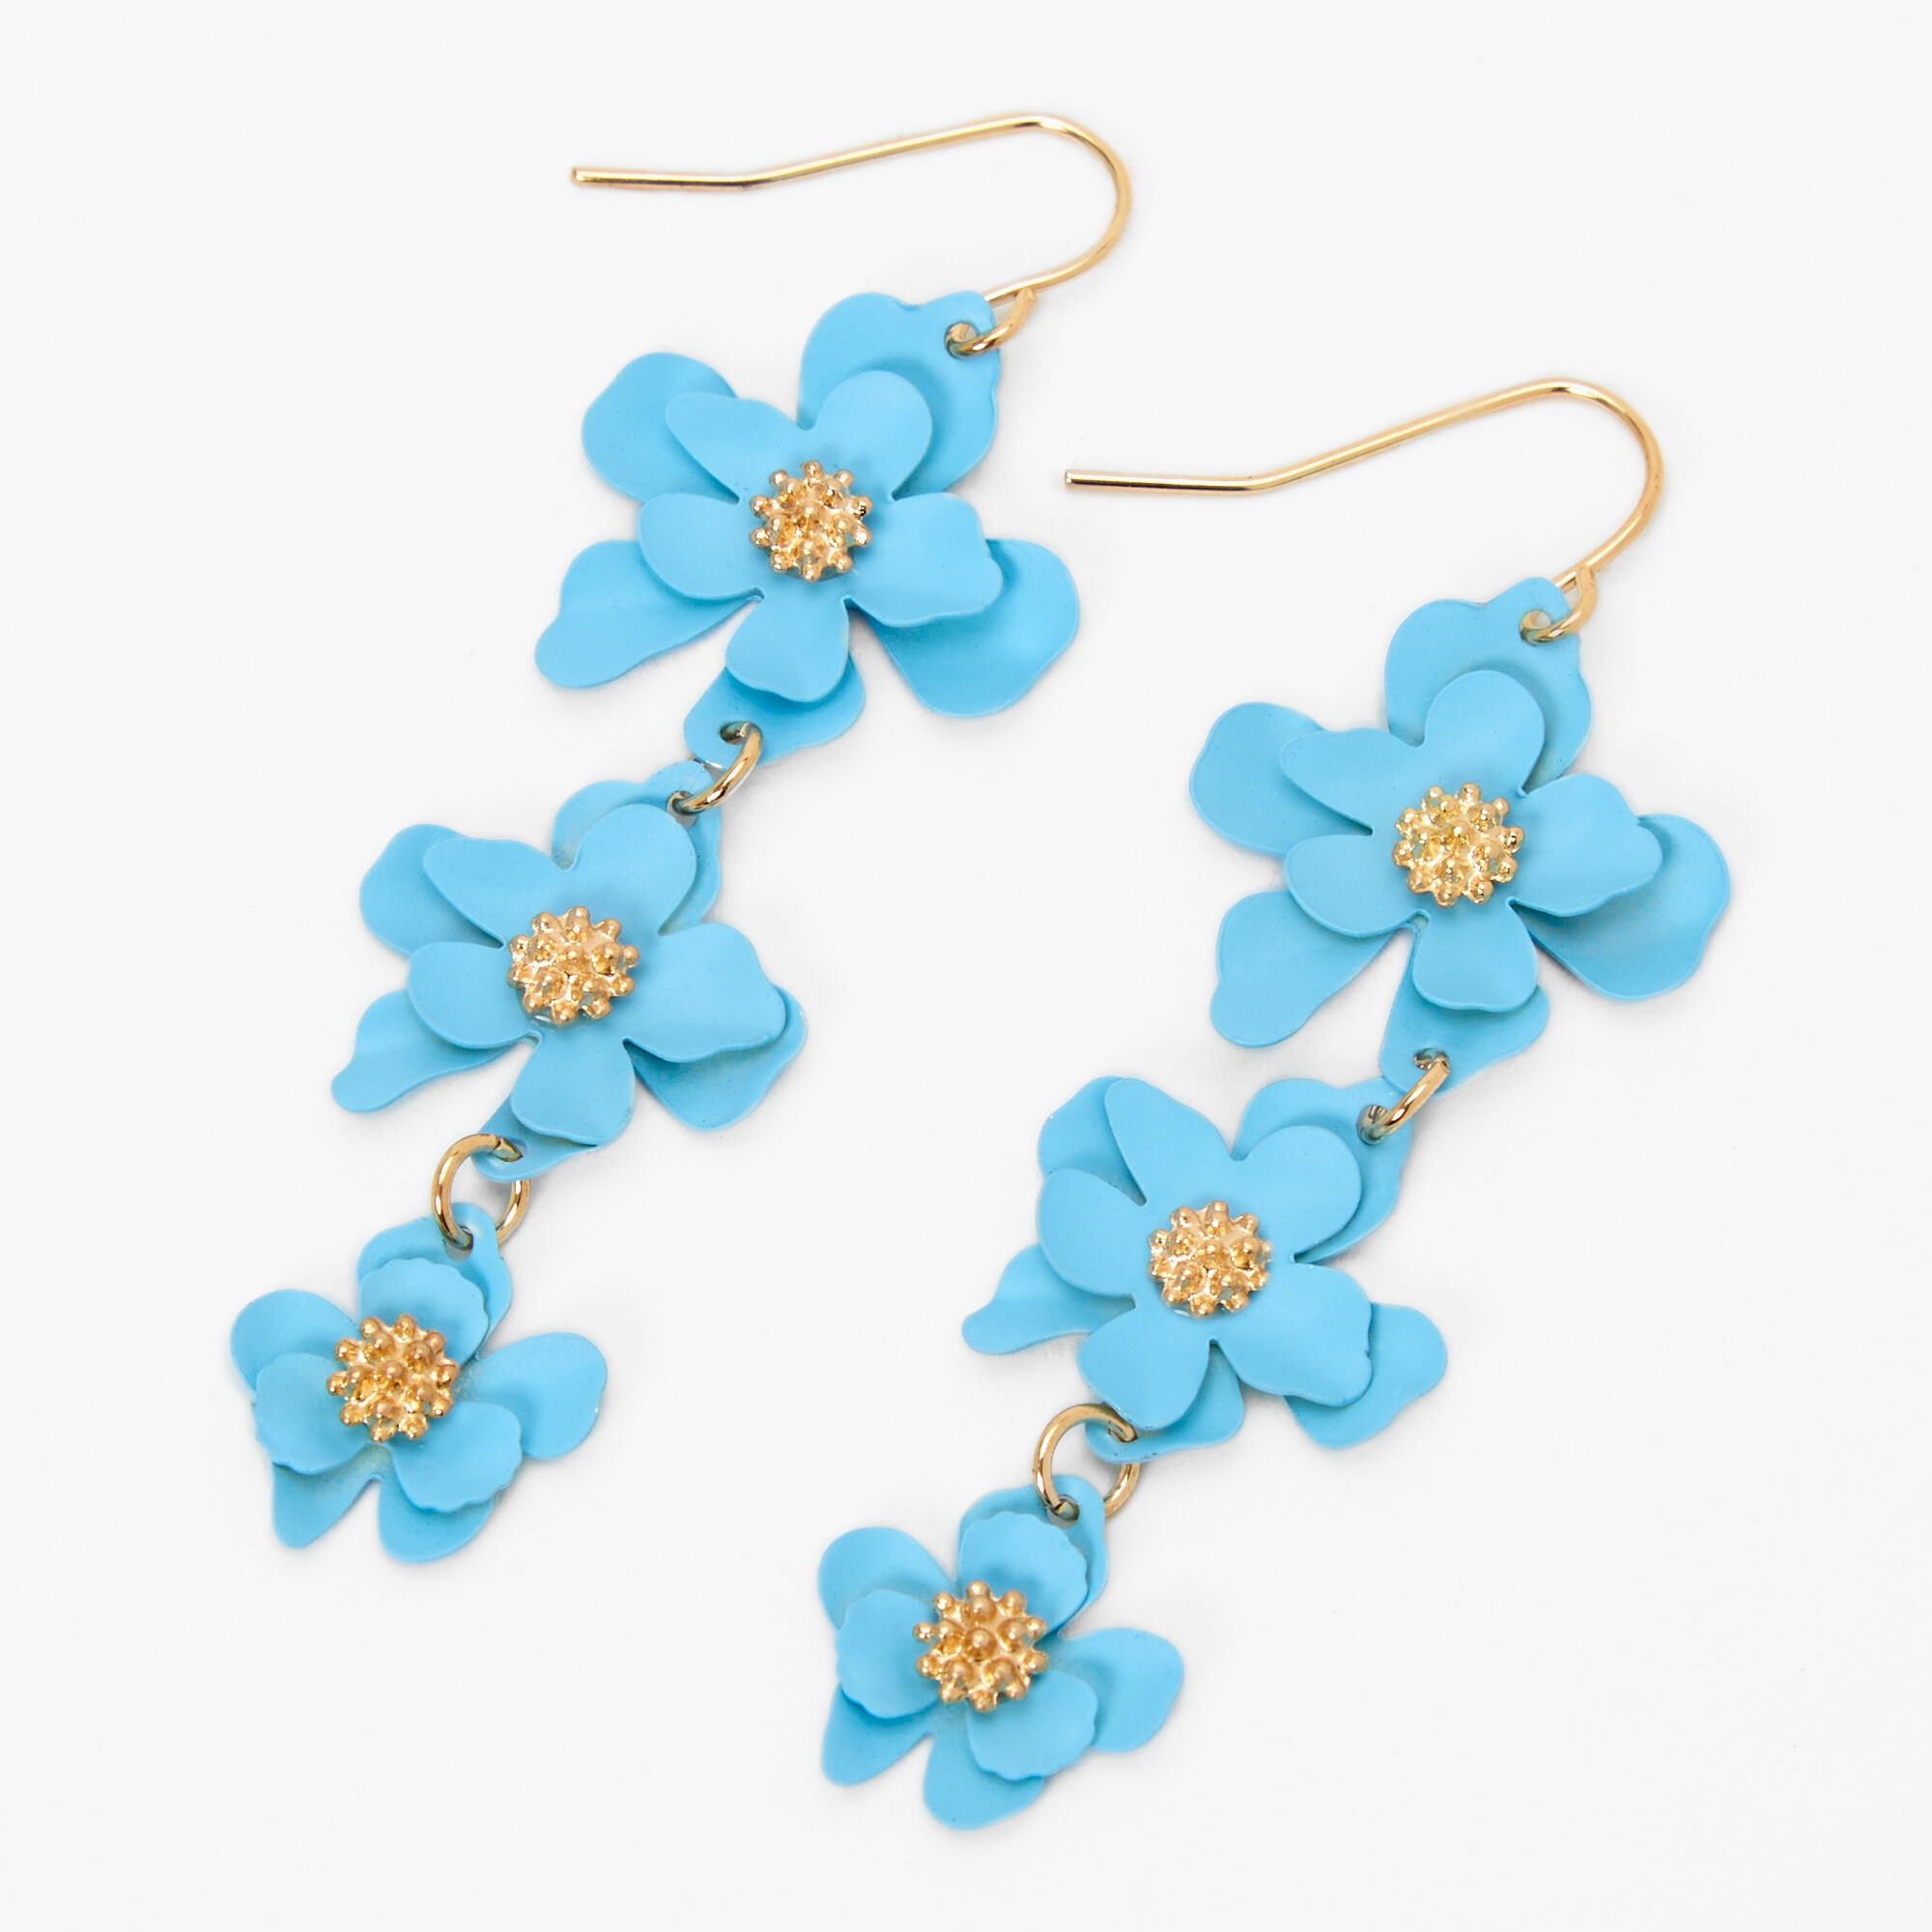 Best Friends Pastel Glitter Heart Locket Pendant Necklaces | Claire's US